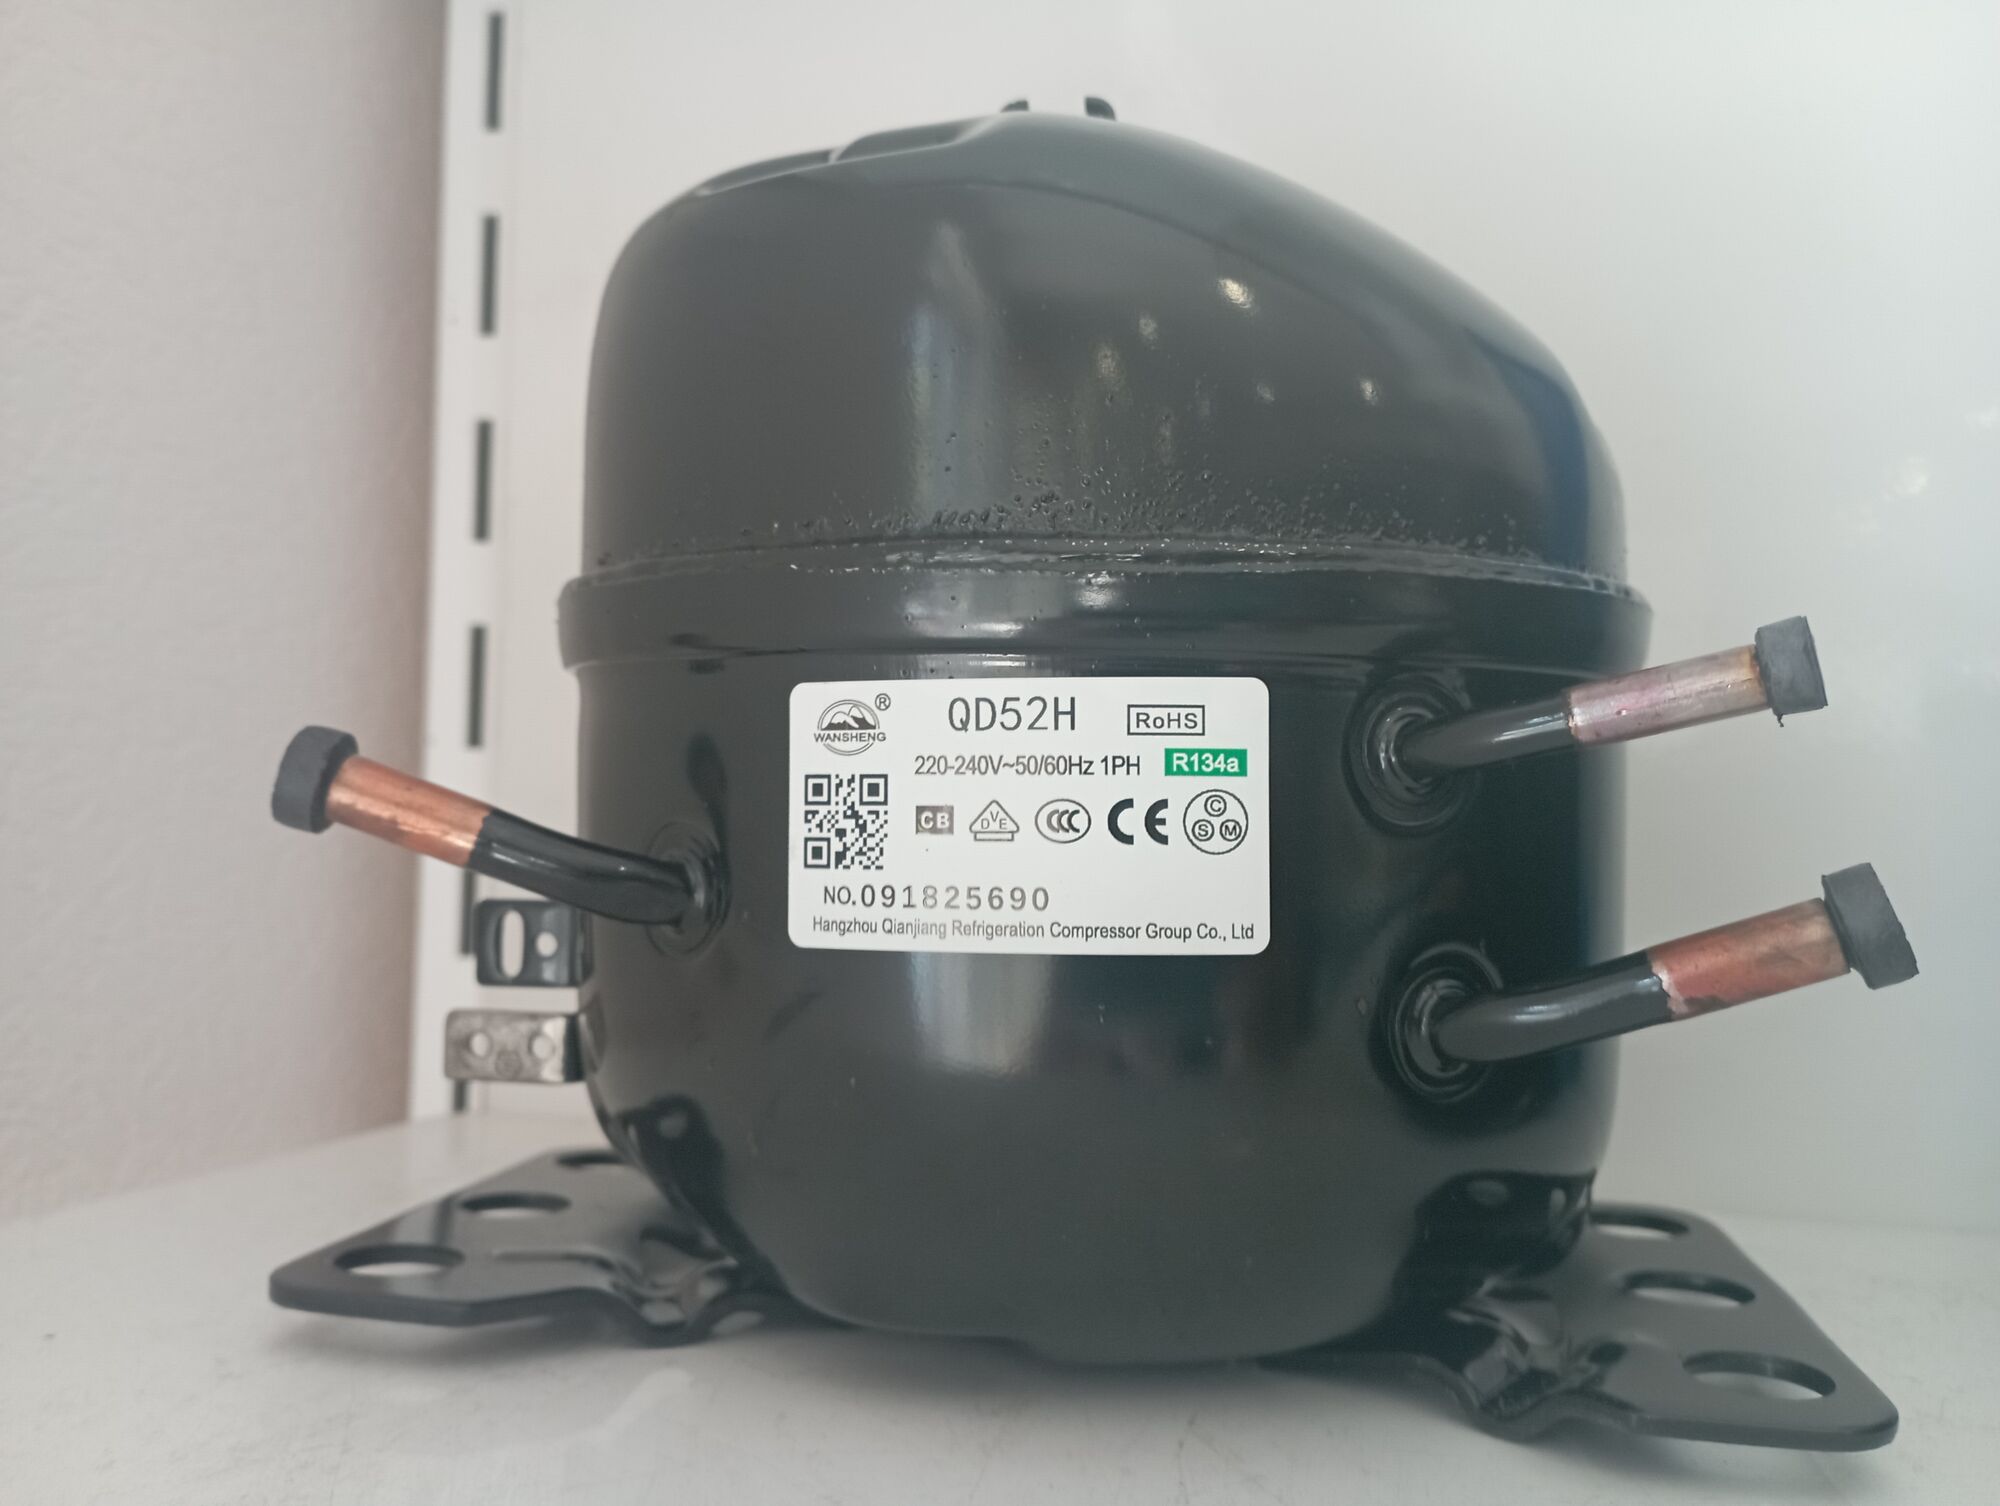 Компрессор холодильный герметичный бытовой QD 52 H (аналог GVM44) 130 Вт (R134А)